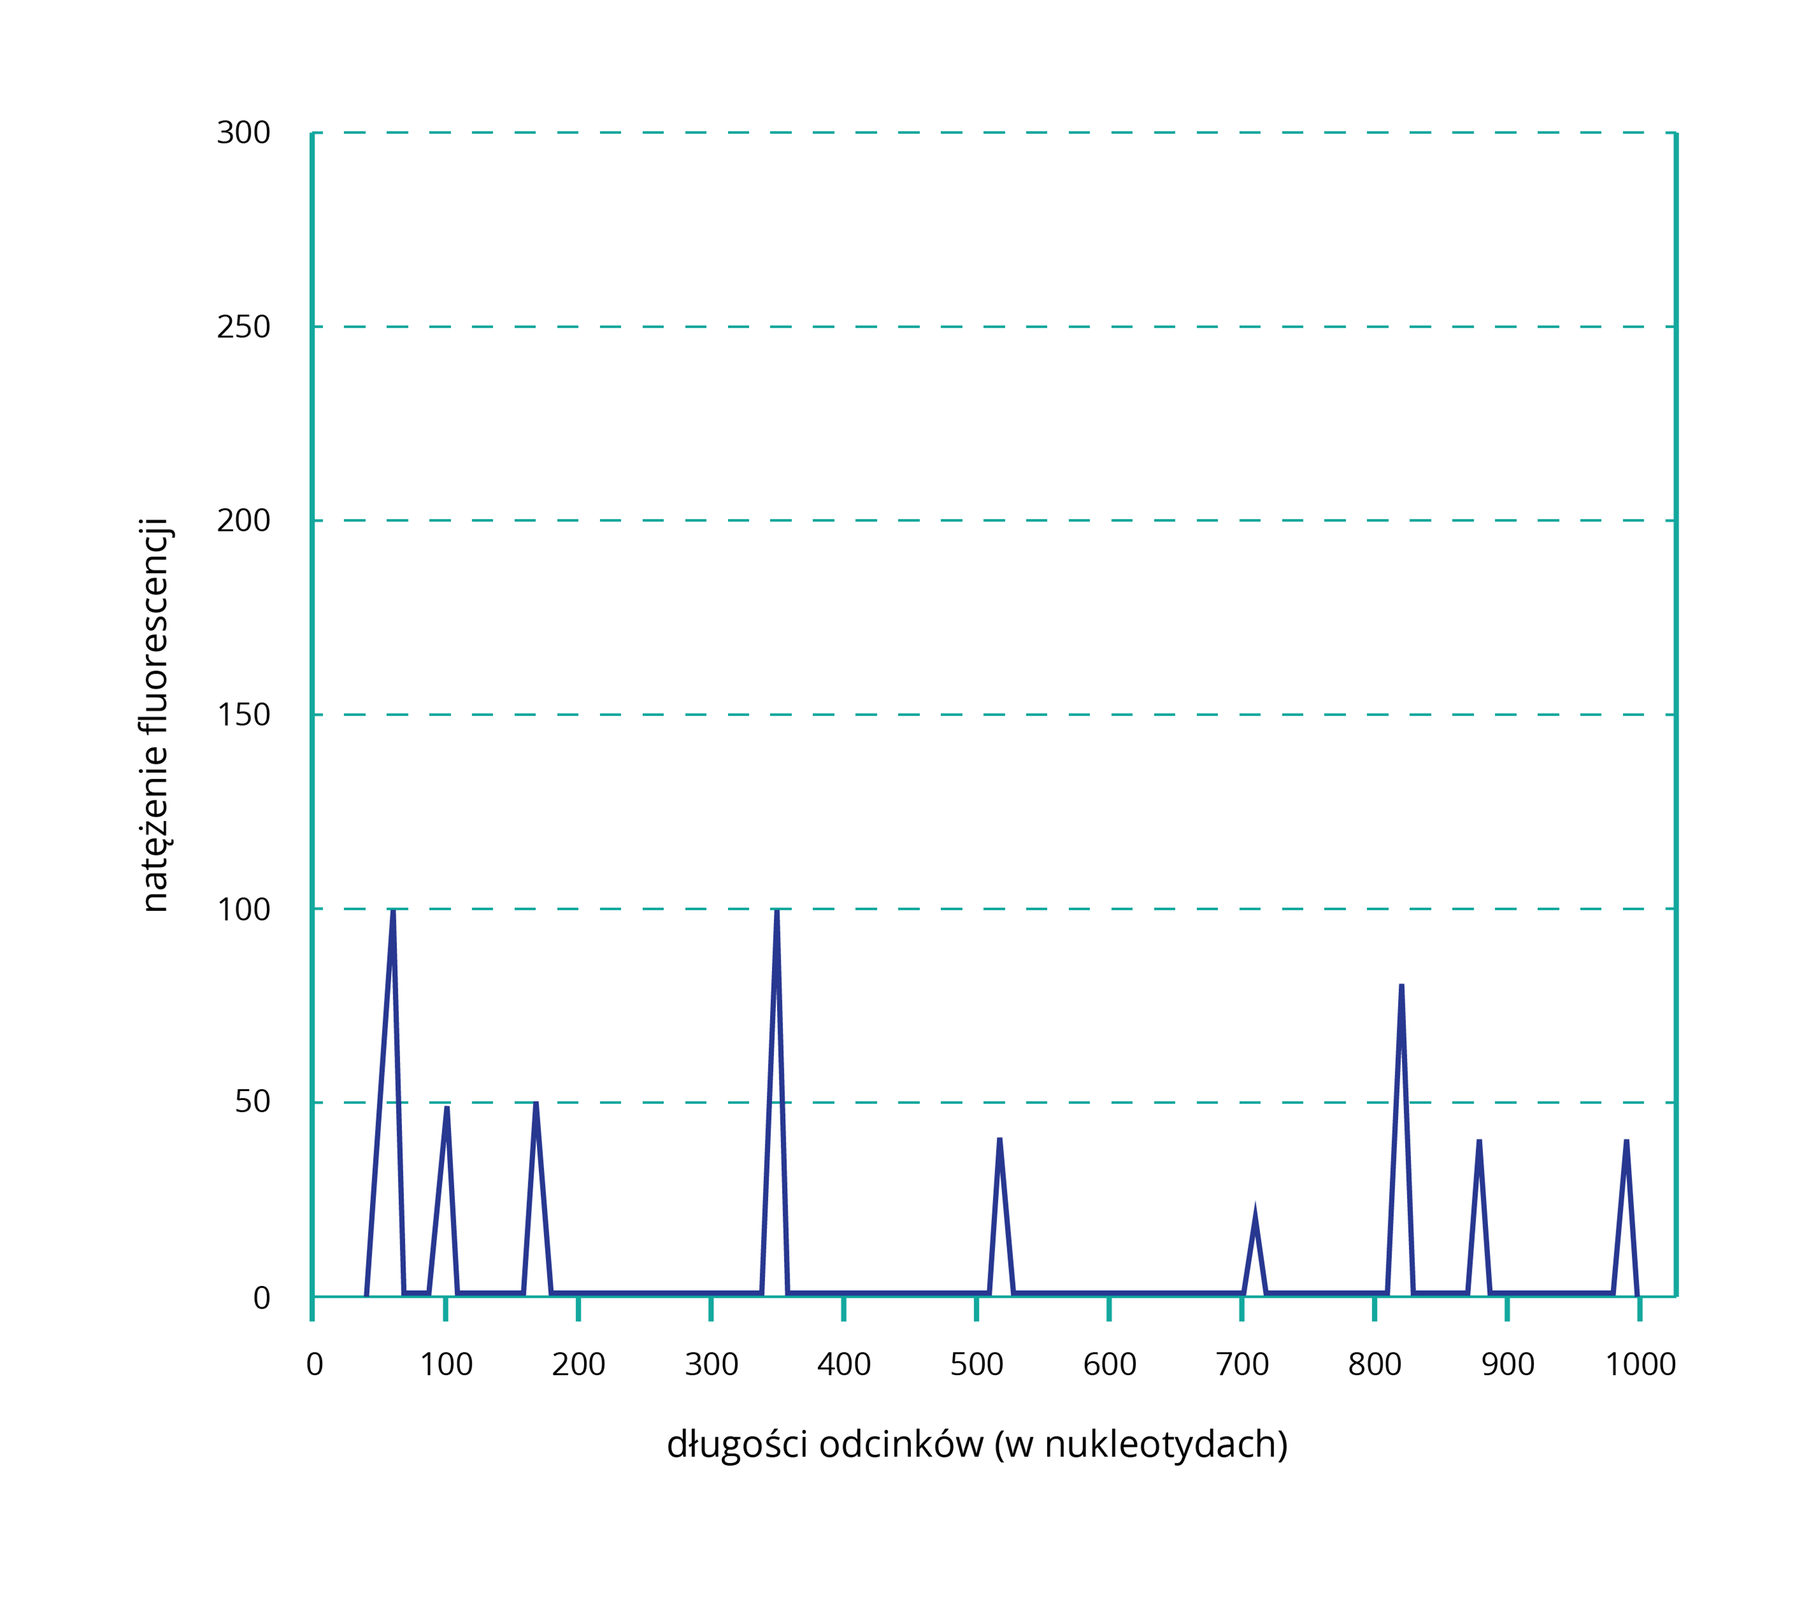 Grafika przedstawia przykładowy profil genetyczny. Jest to wykres. Na osi poziomej znajdują się długości odcinków (w nukleotydach). Zaznaczono wartości 0, 100, 200, 300 i tak dalej, aż do 1000. Na osi pionowej umieszczono natężenie fluorescencji. Wartości wzrastają o 50, zaczynając od 0, a kończąc na 300. Na wykresie zaznaczono trójkątne piki. 